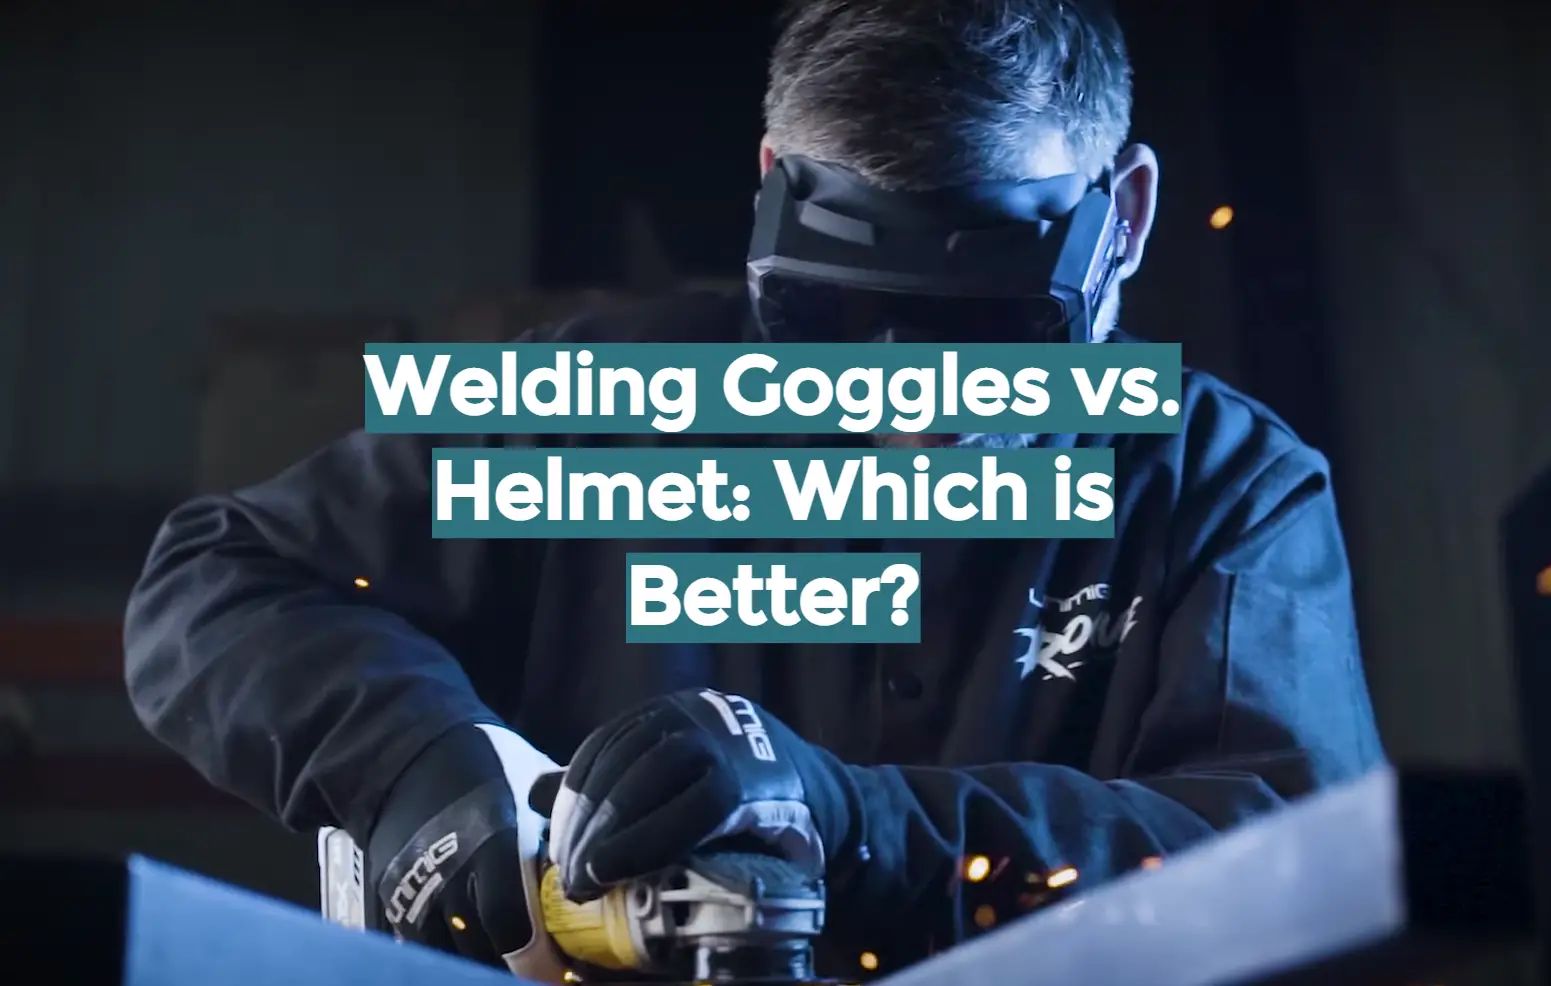 Welding Goggles vs. Helmet: Which is Better?